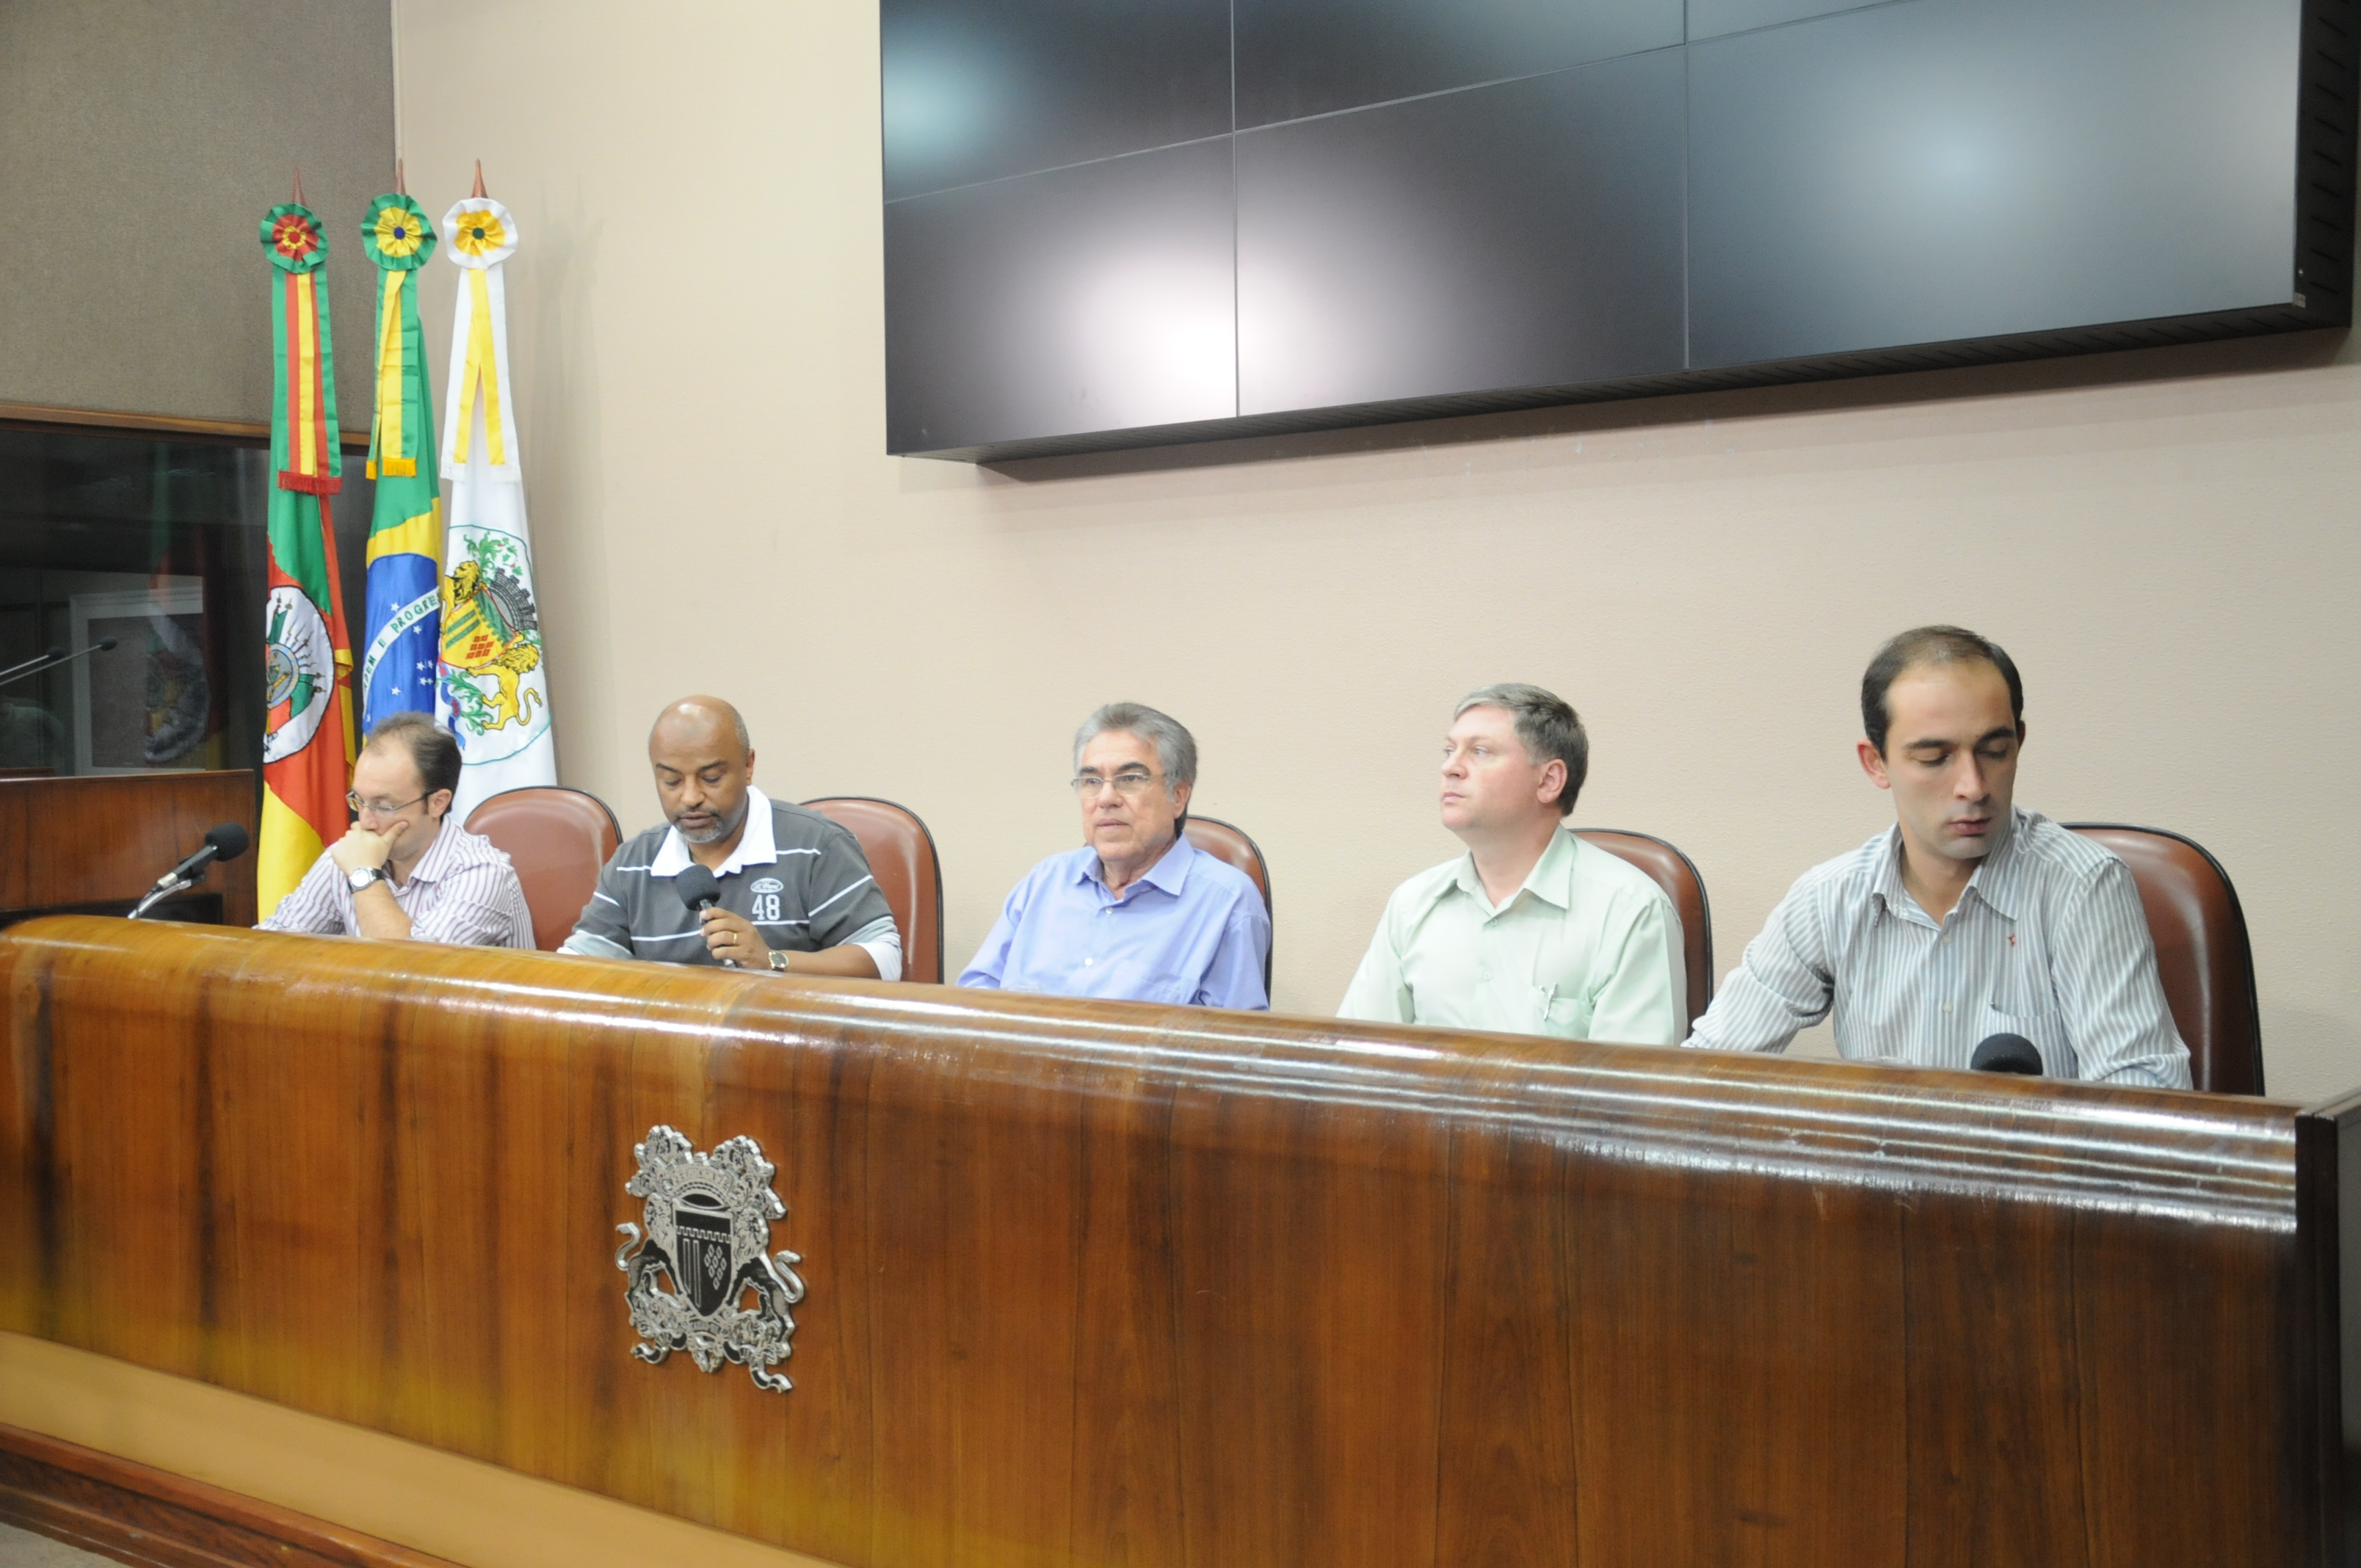 Doze emendas ao orçamento de 2013 somam R$ 3,6 milhões